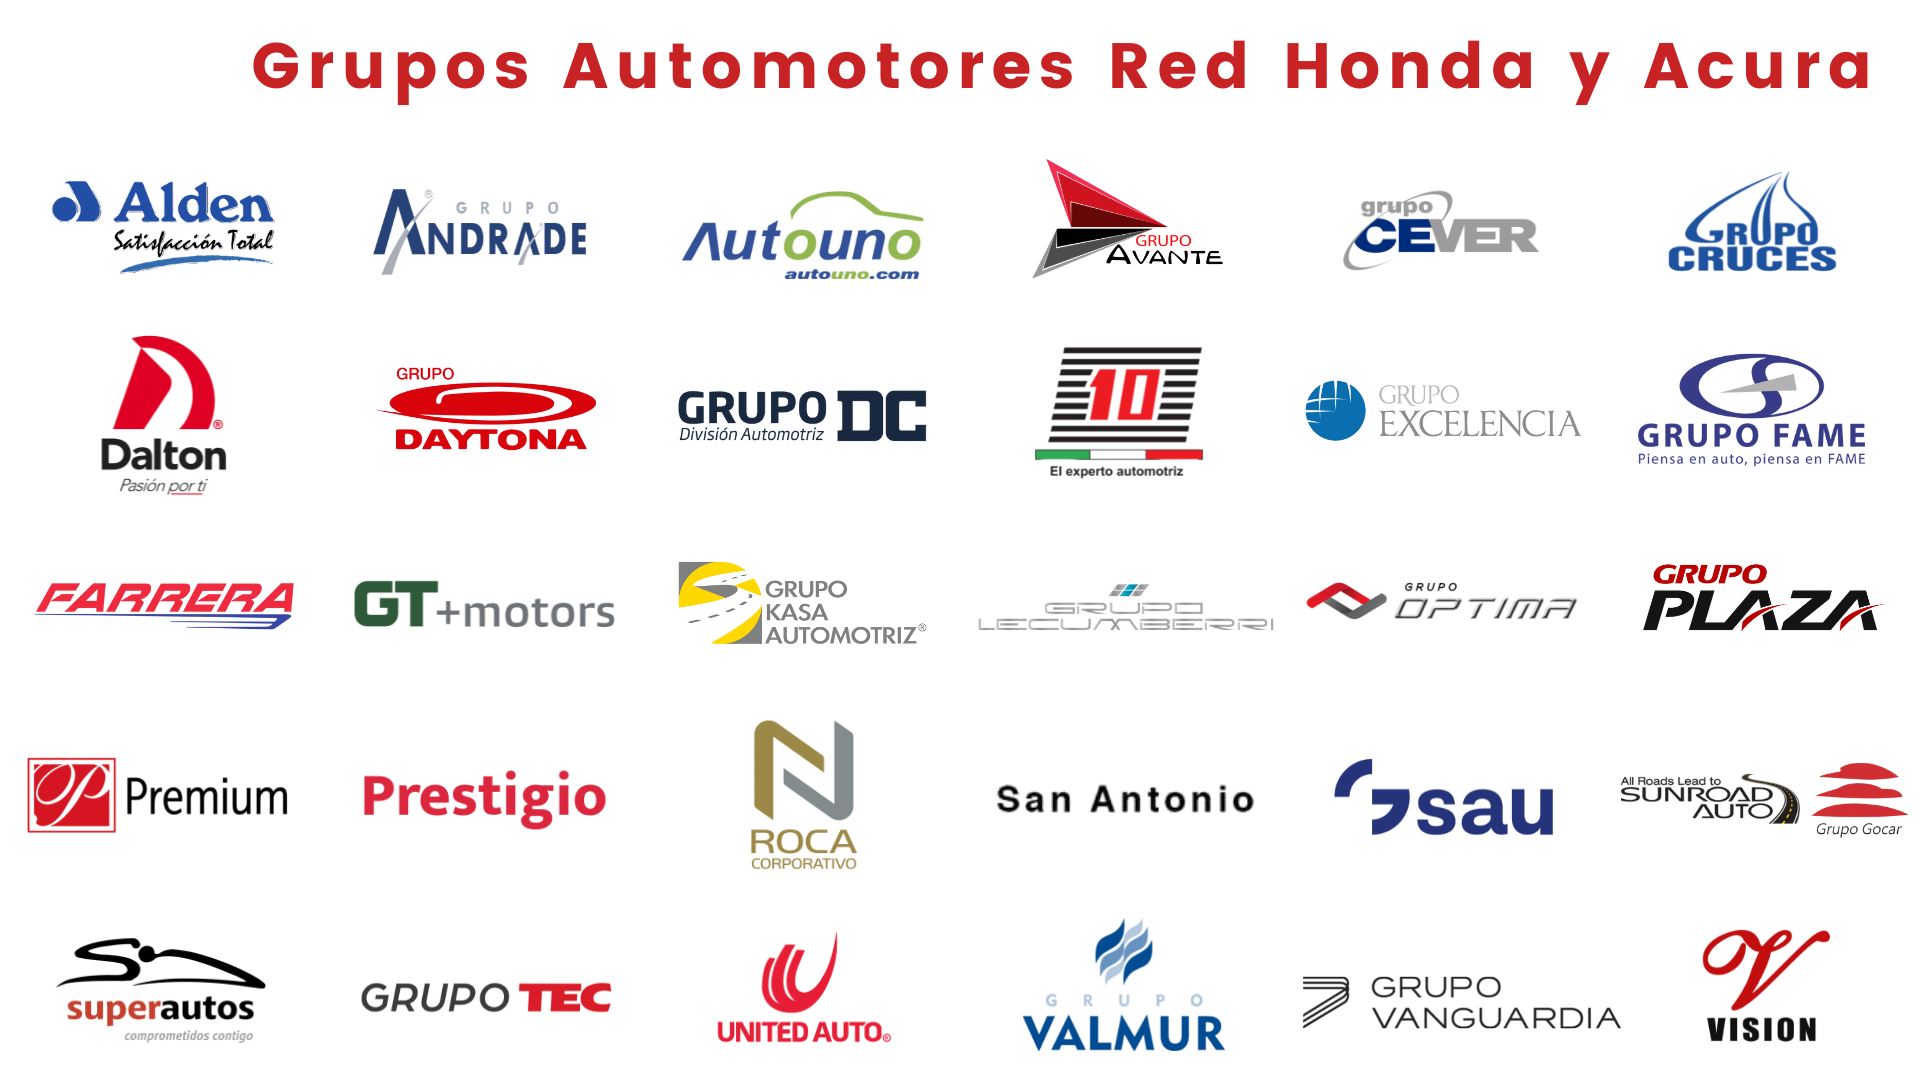 Grupos Red Honda Acura NOV21